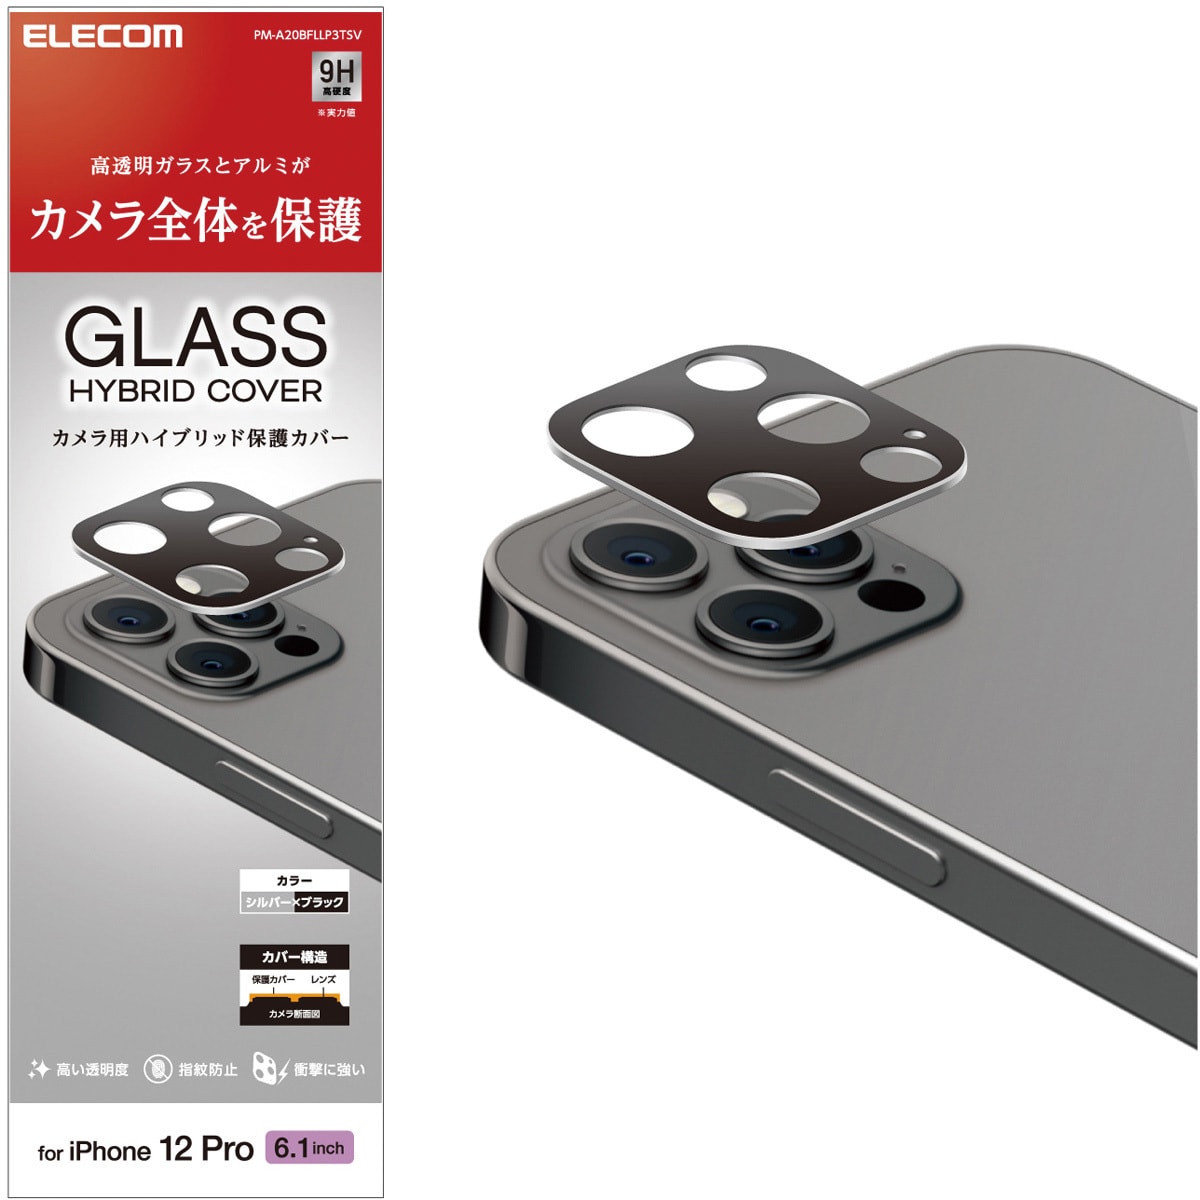 PM-A20BFLLP3TSV iPhone12 Pro カメラレンズカバー 保護カバー ガラス アルミフレーム 硬度9H 指紋防止 1個 エレコム  【通販サイトMonotaRO】